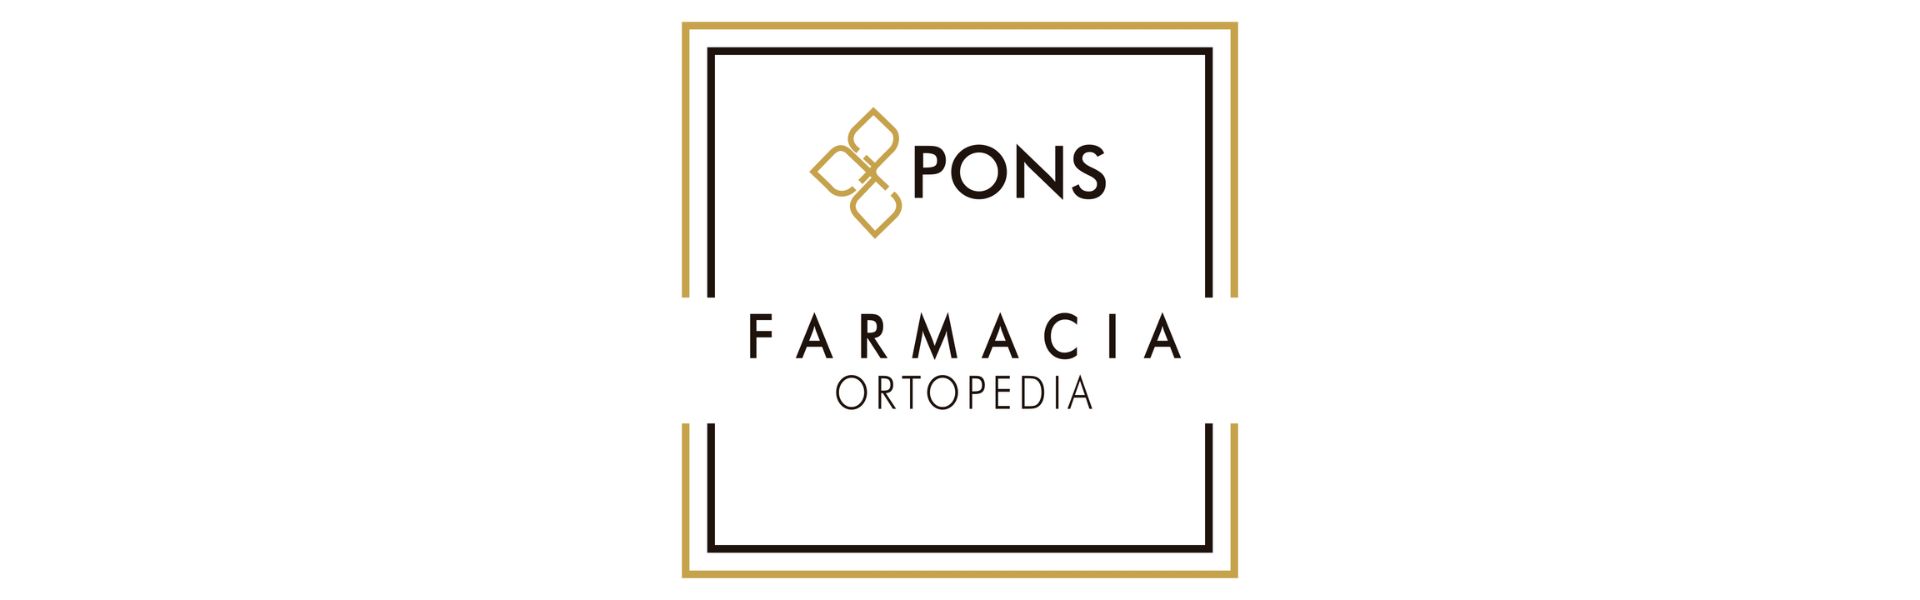 Farmacia Ortopedia Pons Carcaixent